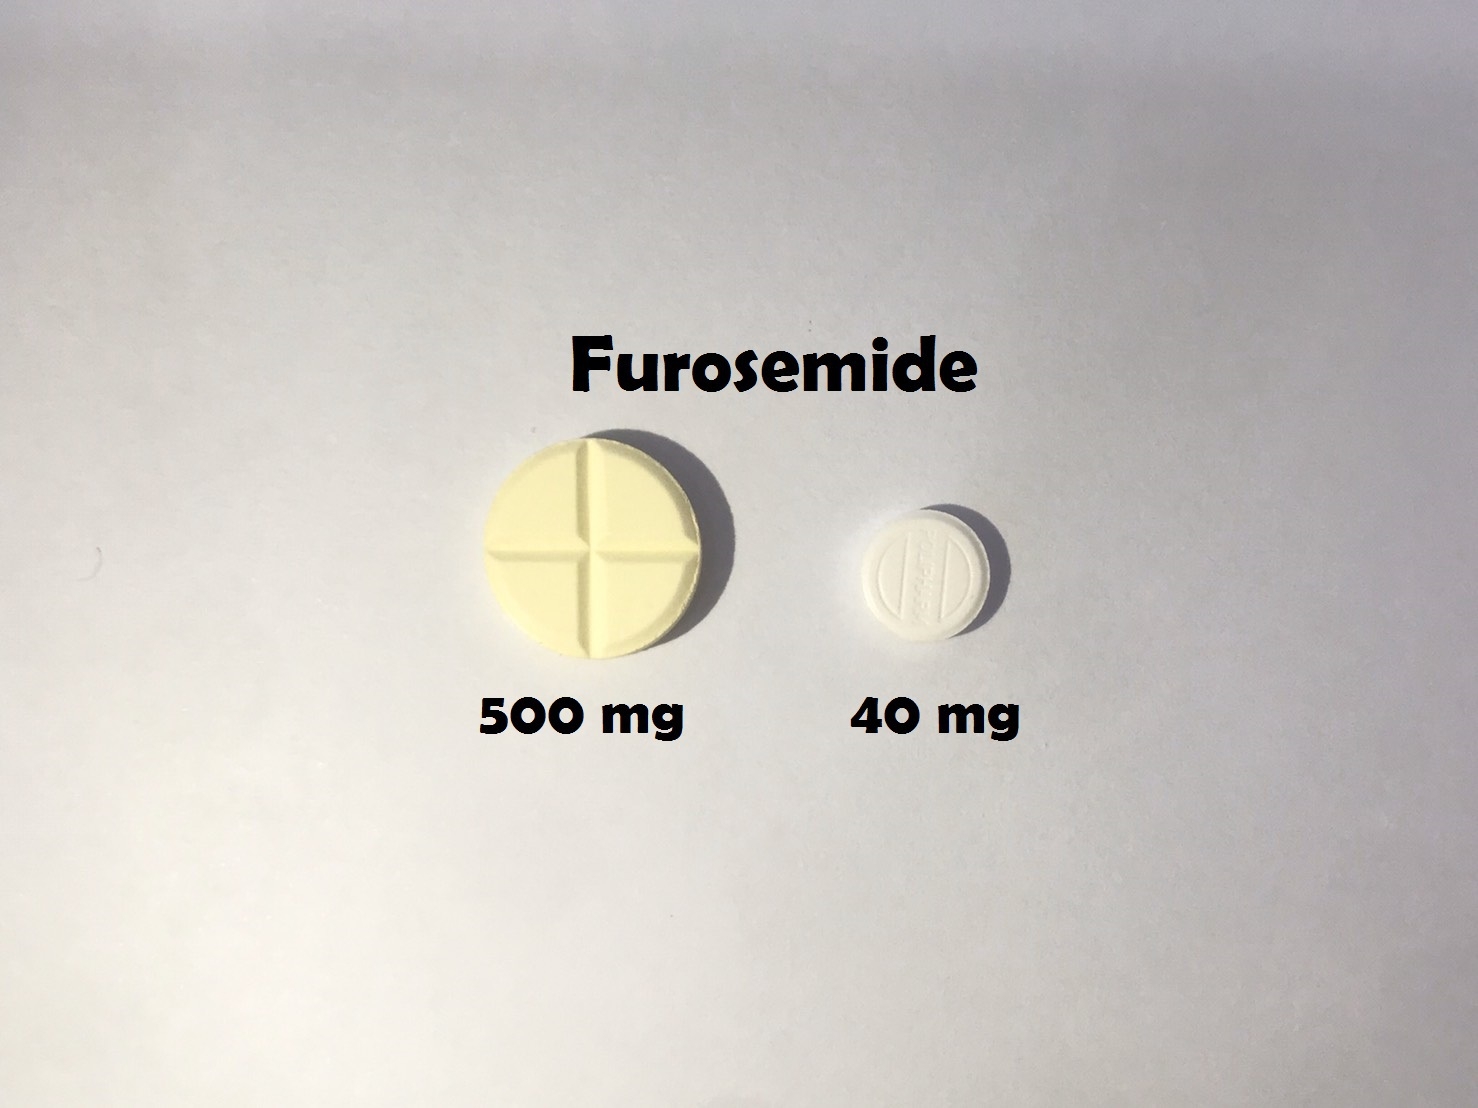 ยาที่มีหลายความแรง : Furosemide 40 mg และ 500 mg